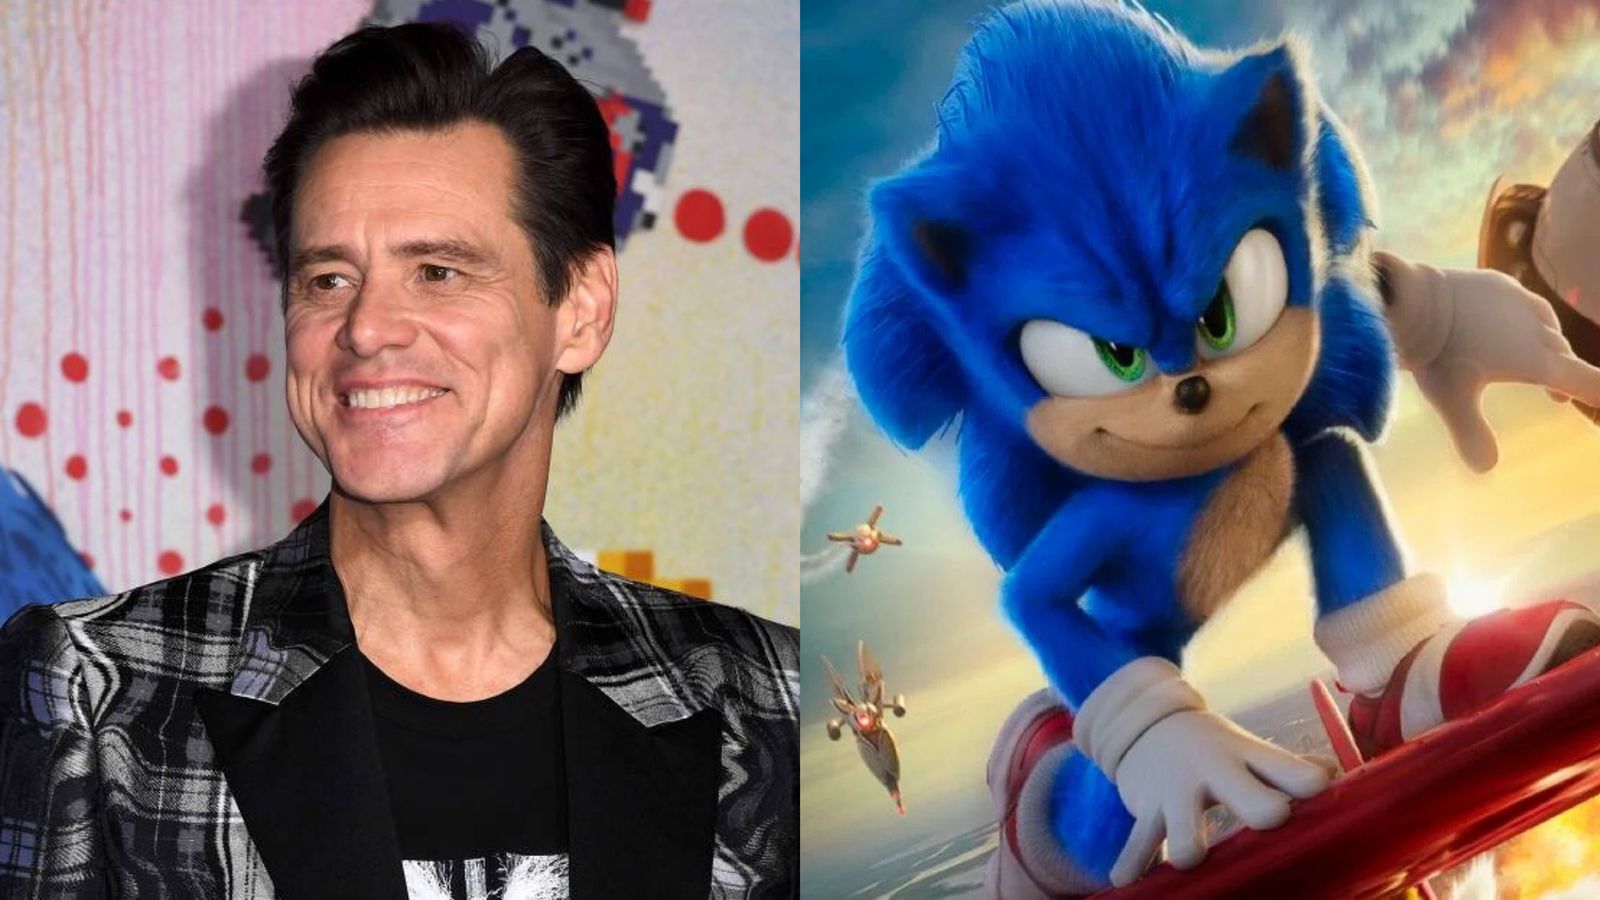 Sonic: O Filme 2 ganha data de lançamento